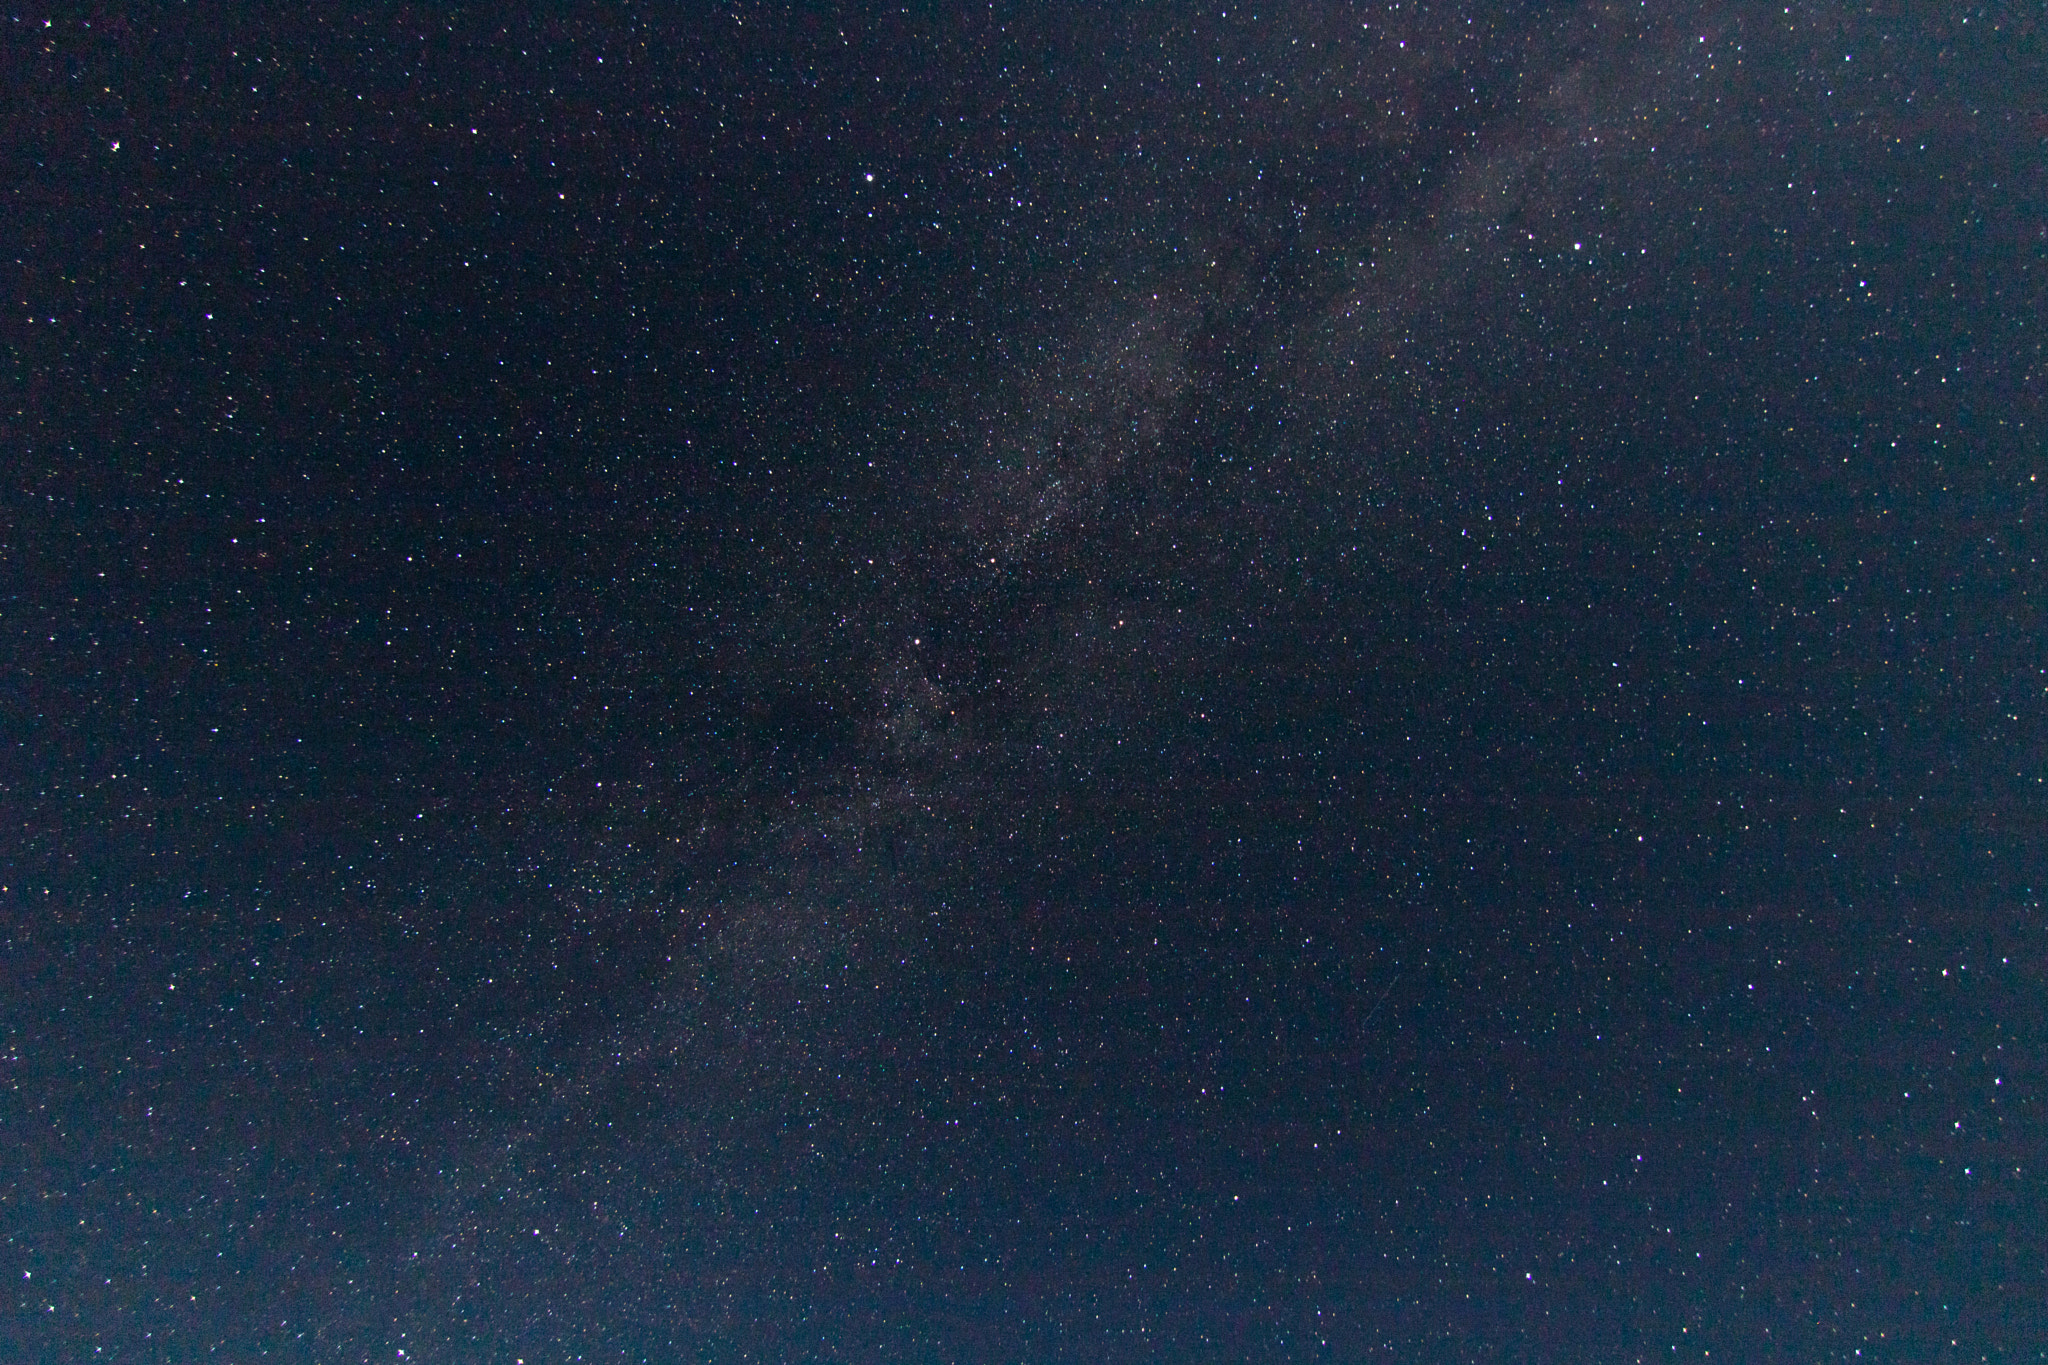 Canon EOS 750D (EOS Rebel T6i / EOS Kiss X8i) + Tokina AT-X Pro 11-16mm F2.8 DX sample photo. Milky way near the grand canyon (arizona) photography